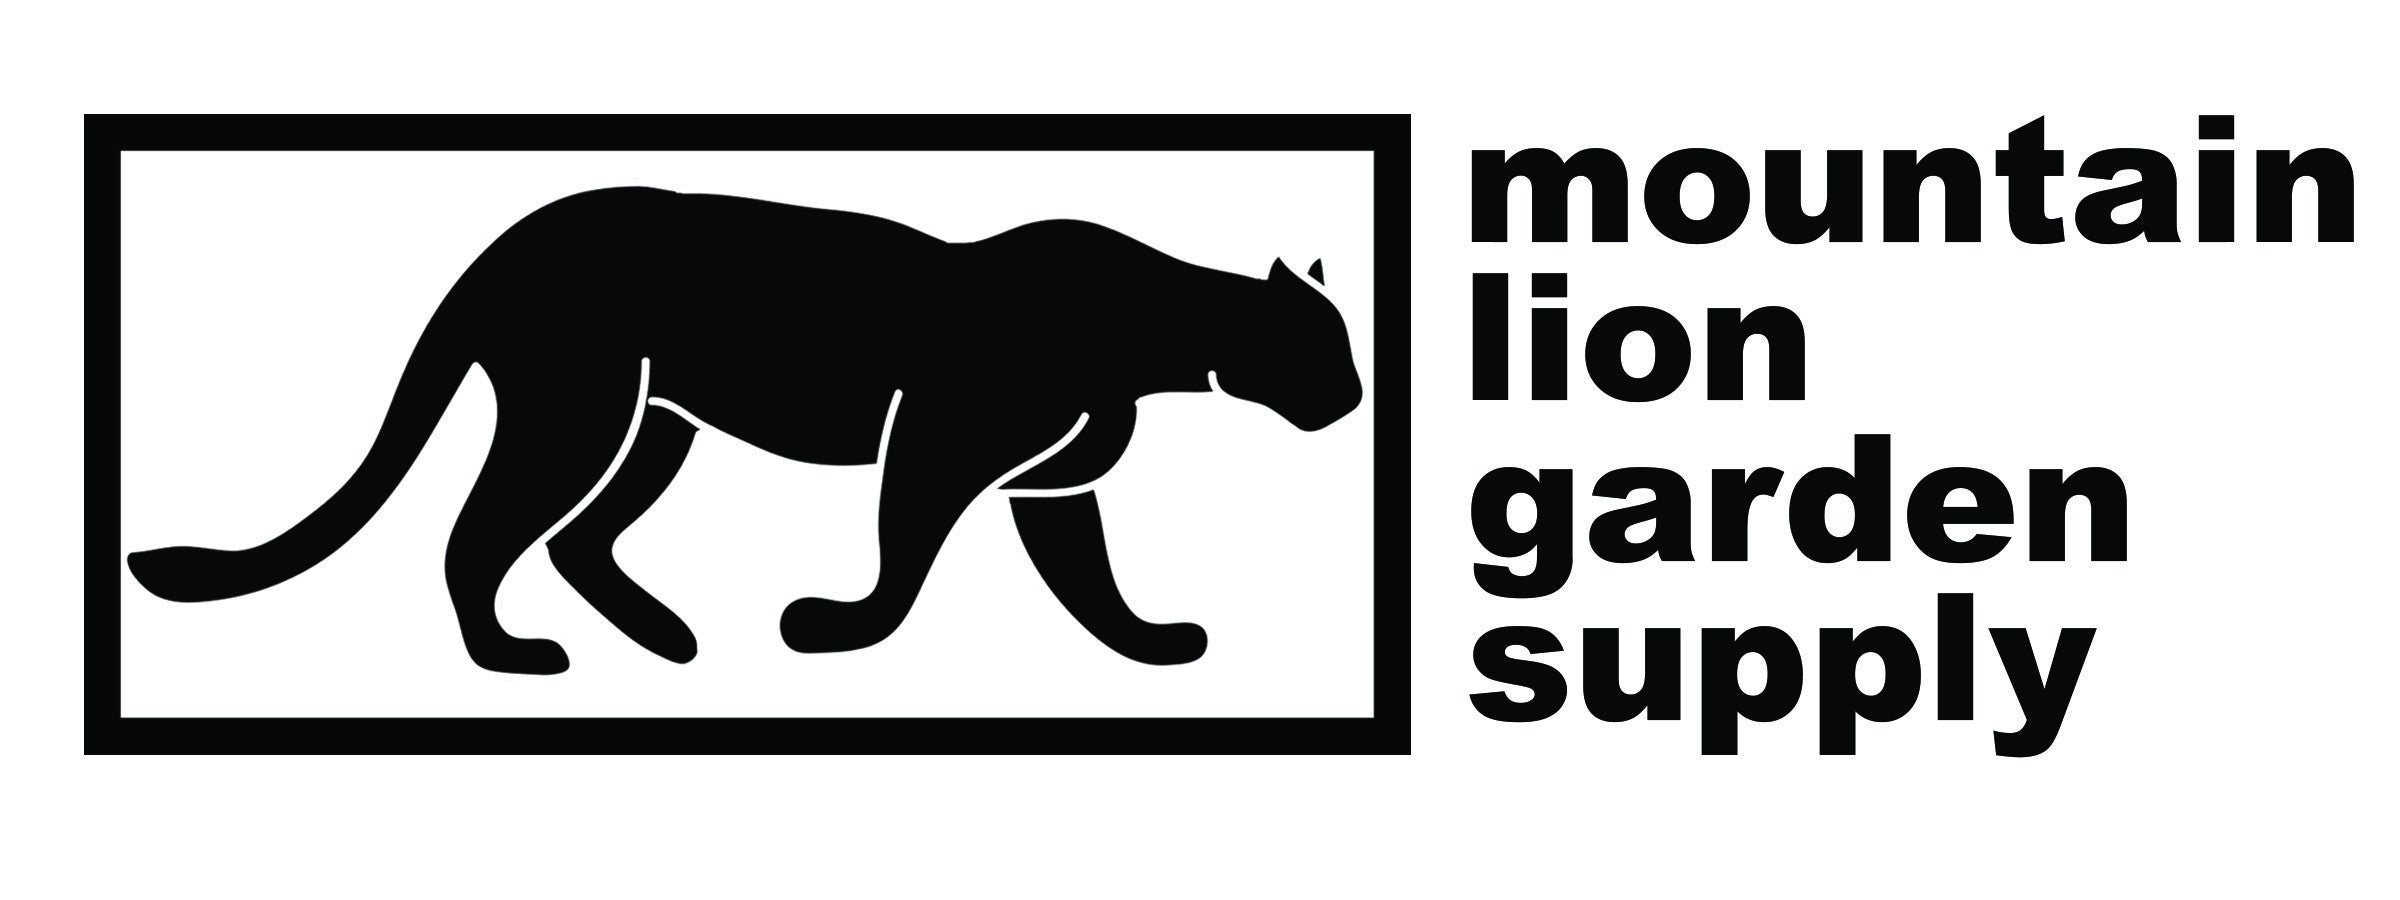 Mountain Lion Garden Supply